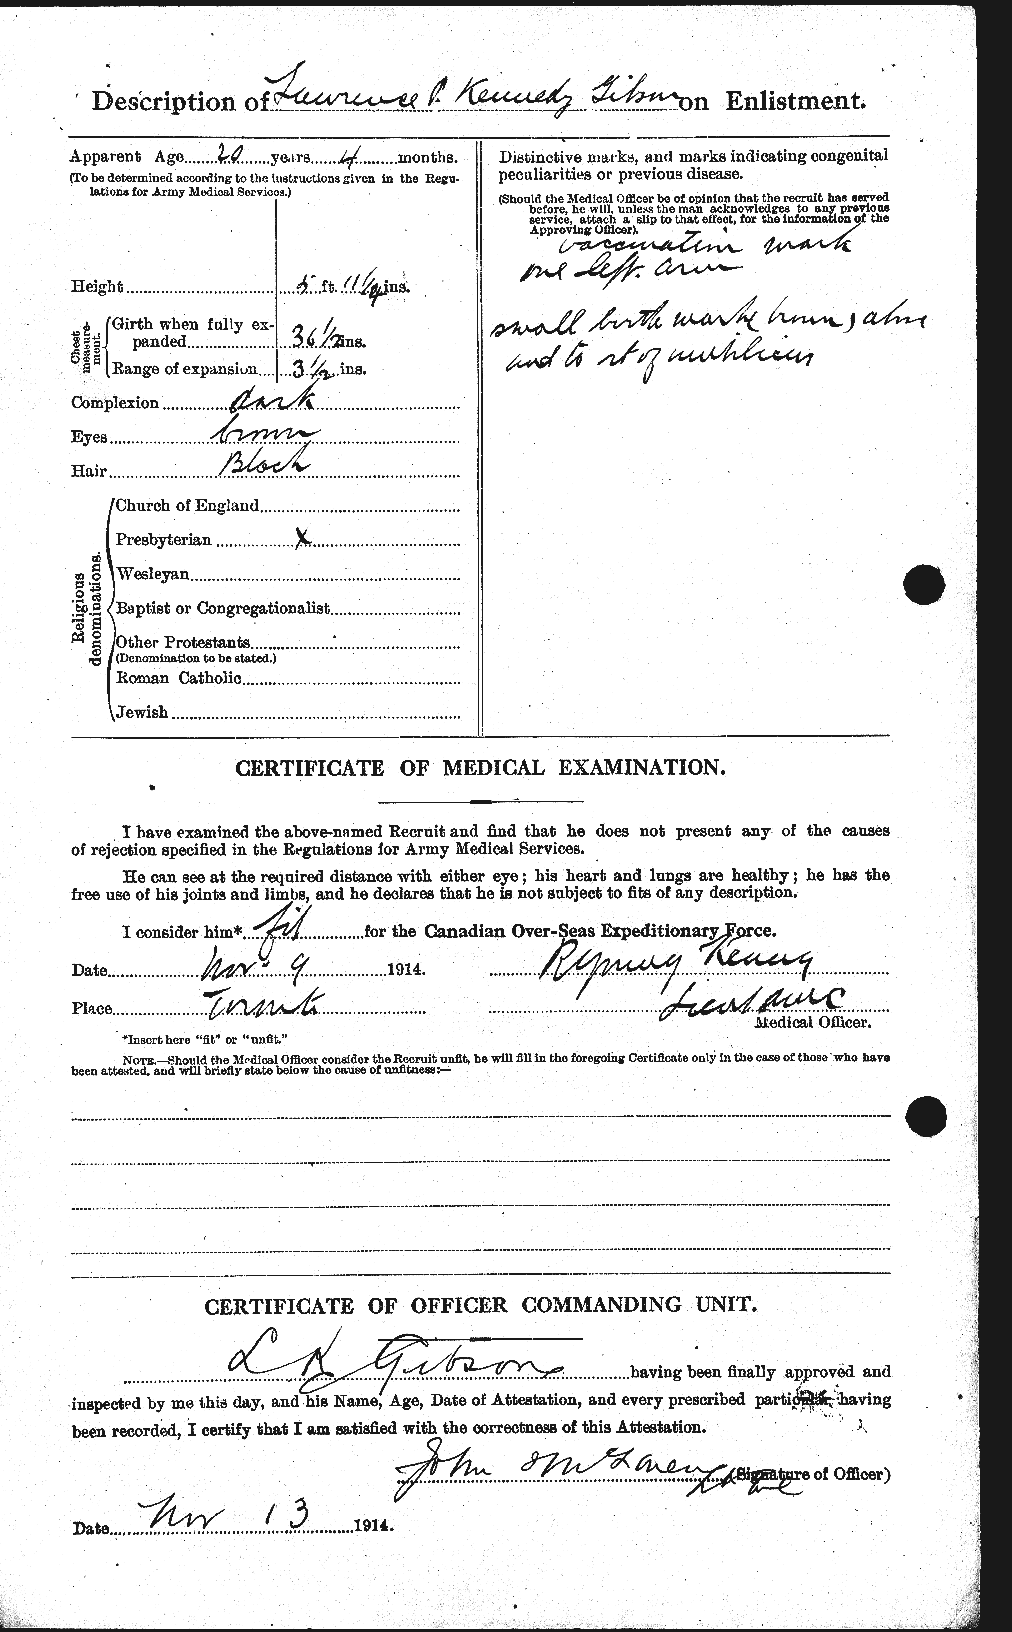 Dossiers du Personnel de la Première Guerre mondiale - CEC 350579b